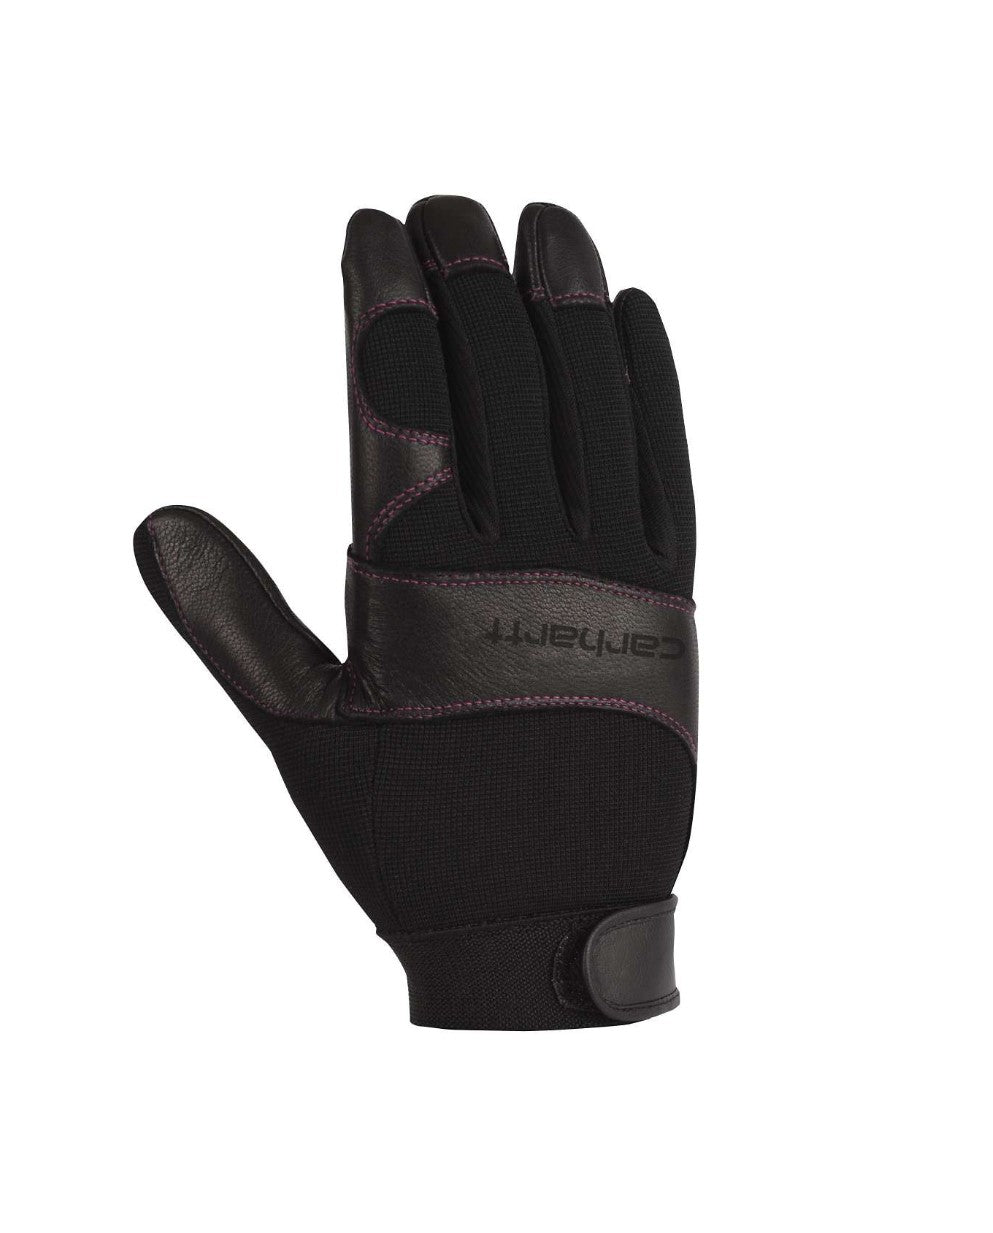 Carhartt Women's Dex II Glove - Work World - Workwear, Work Boots, Safety Gear